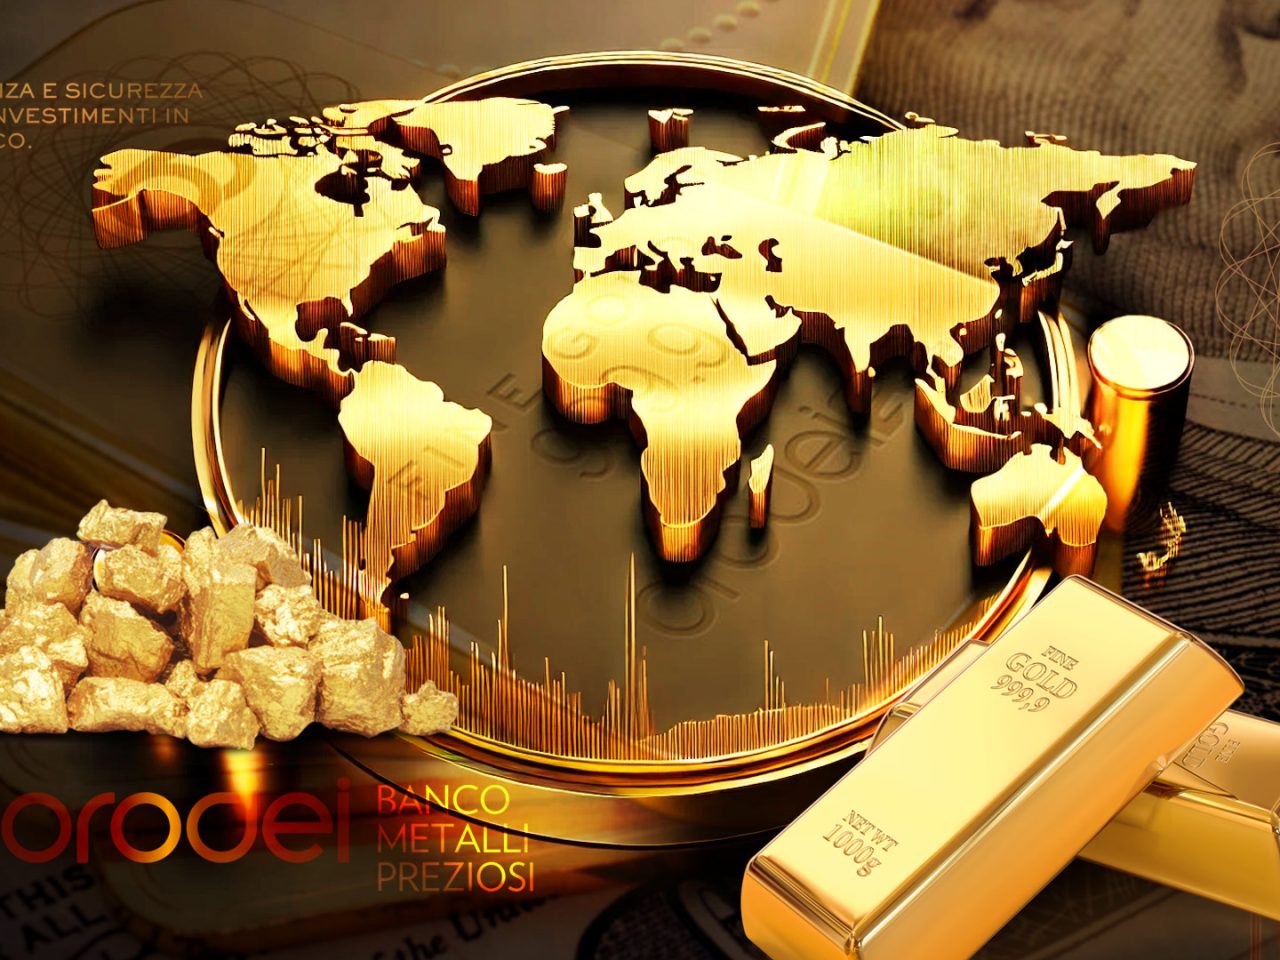 Orodei Banco Metalli Preziosi: Le Economie Avanzate intendono acquistare più Oro nonostante il Prezzo Record